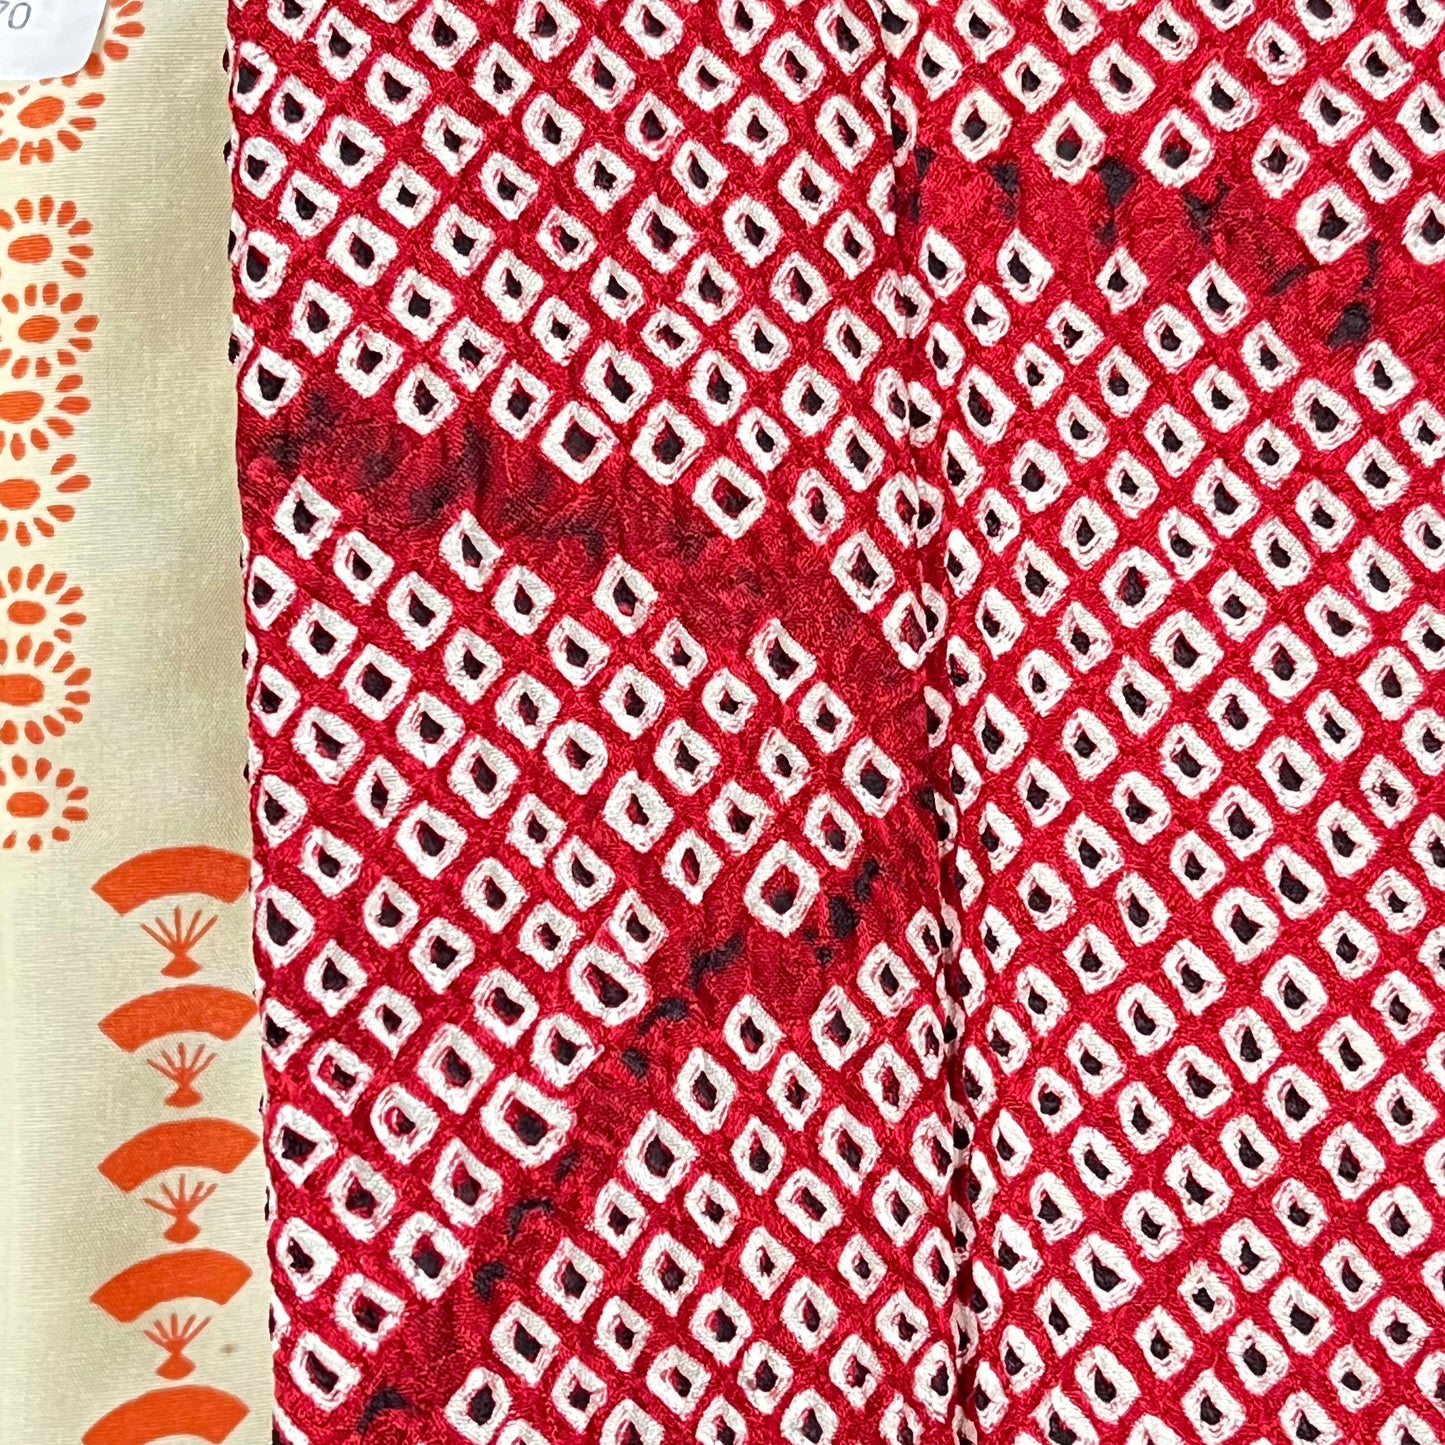 Vintage Japanese Silk Haori Coat in Shibori Tie-dye Bright Red Fan Pattern 28"L